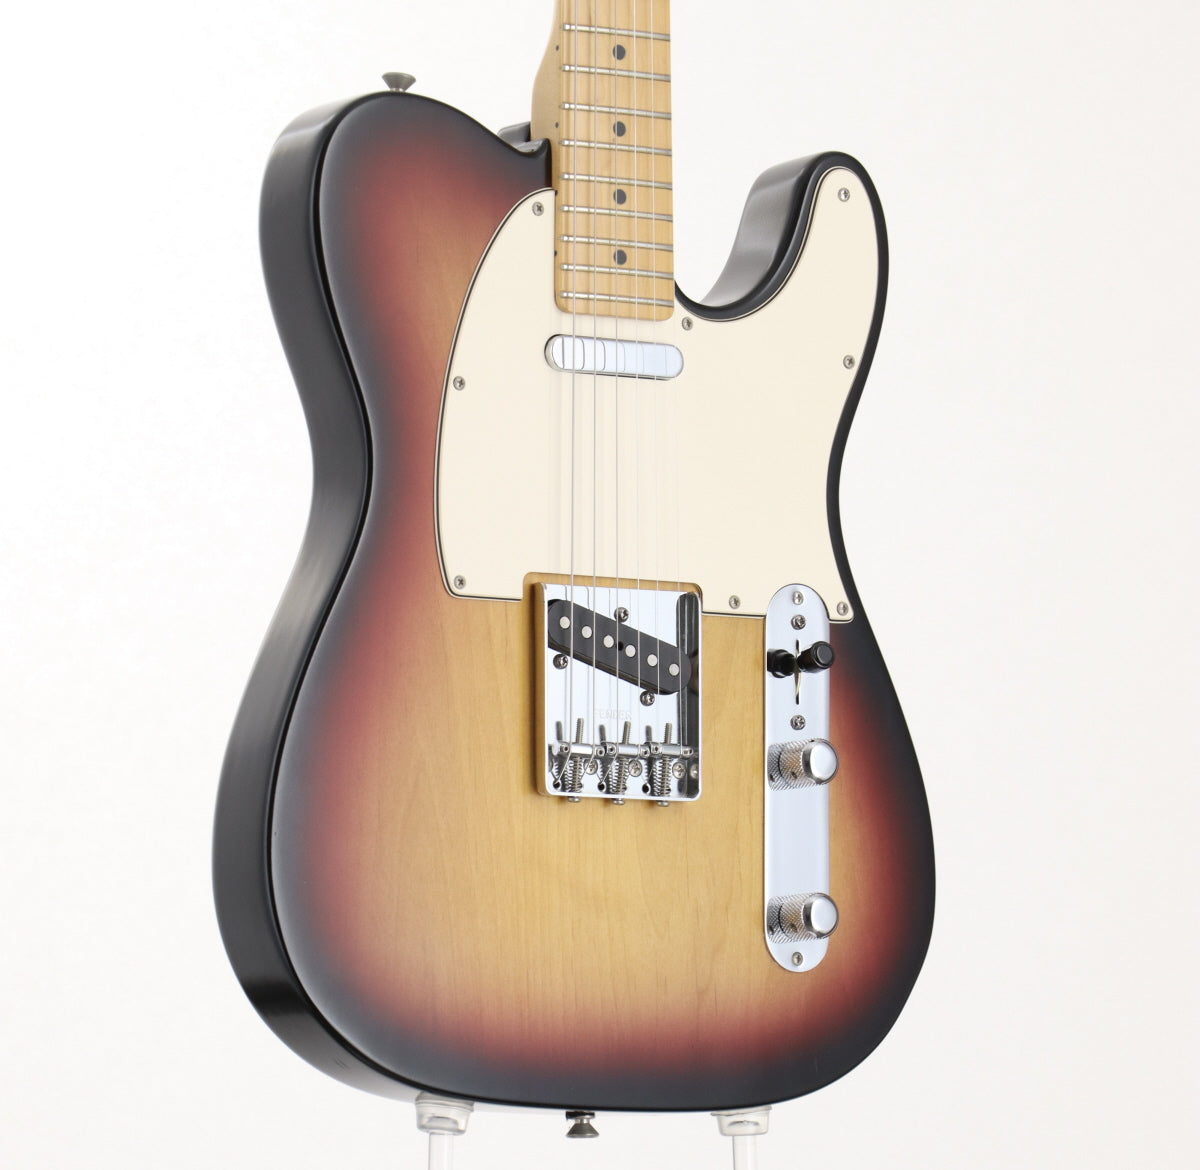 [SN Z3026668] USED Fender / Highway 1 Telecaster 3color Sunburst [06]